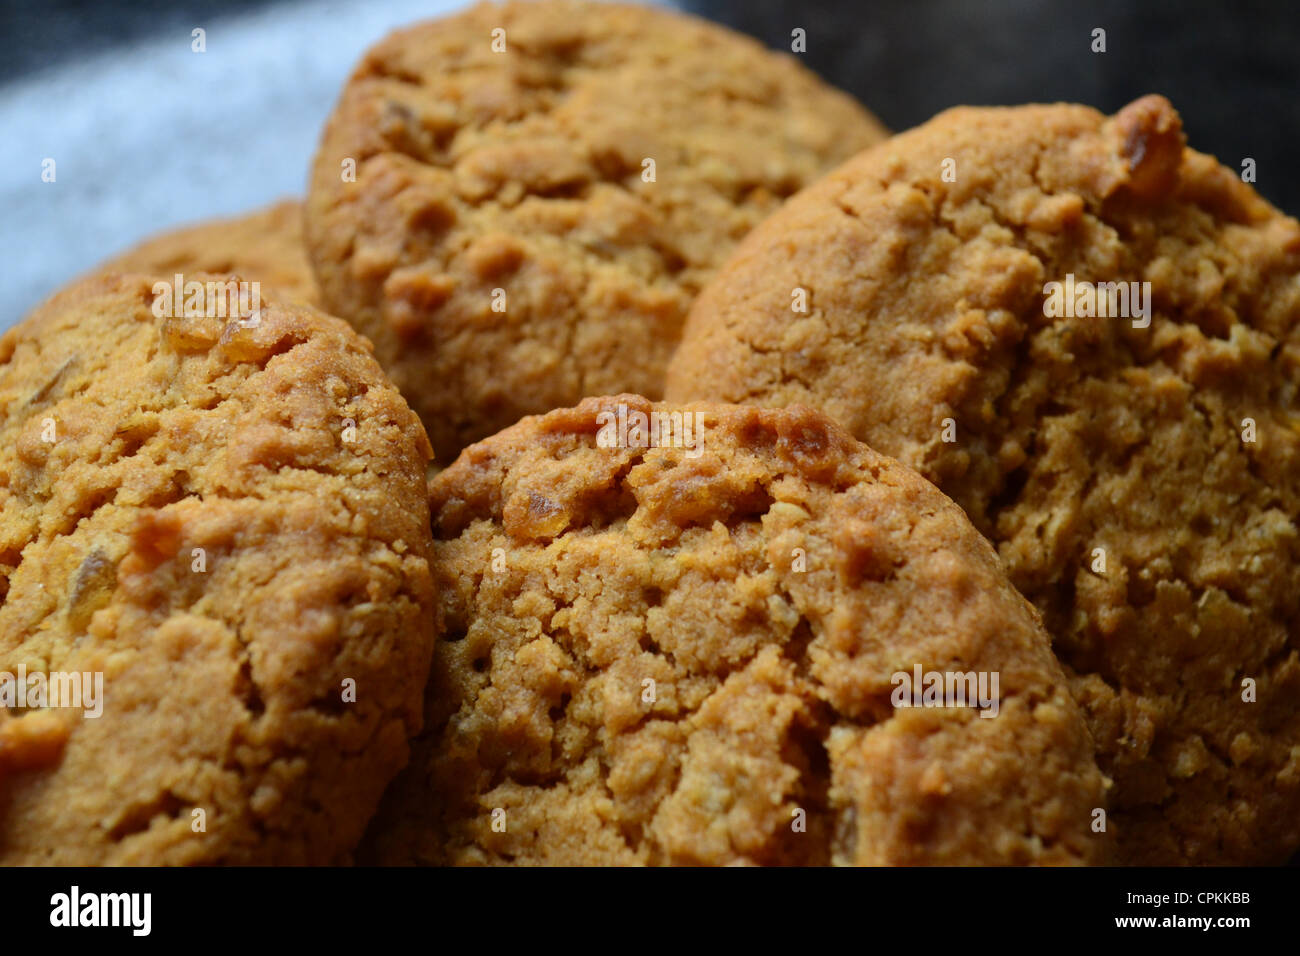 Cookies. Stock Photo